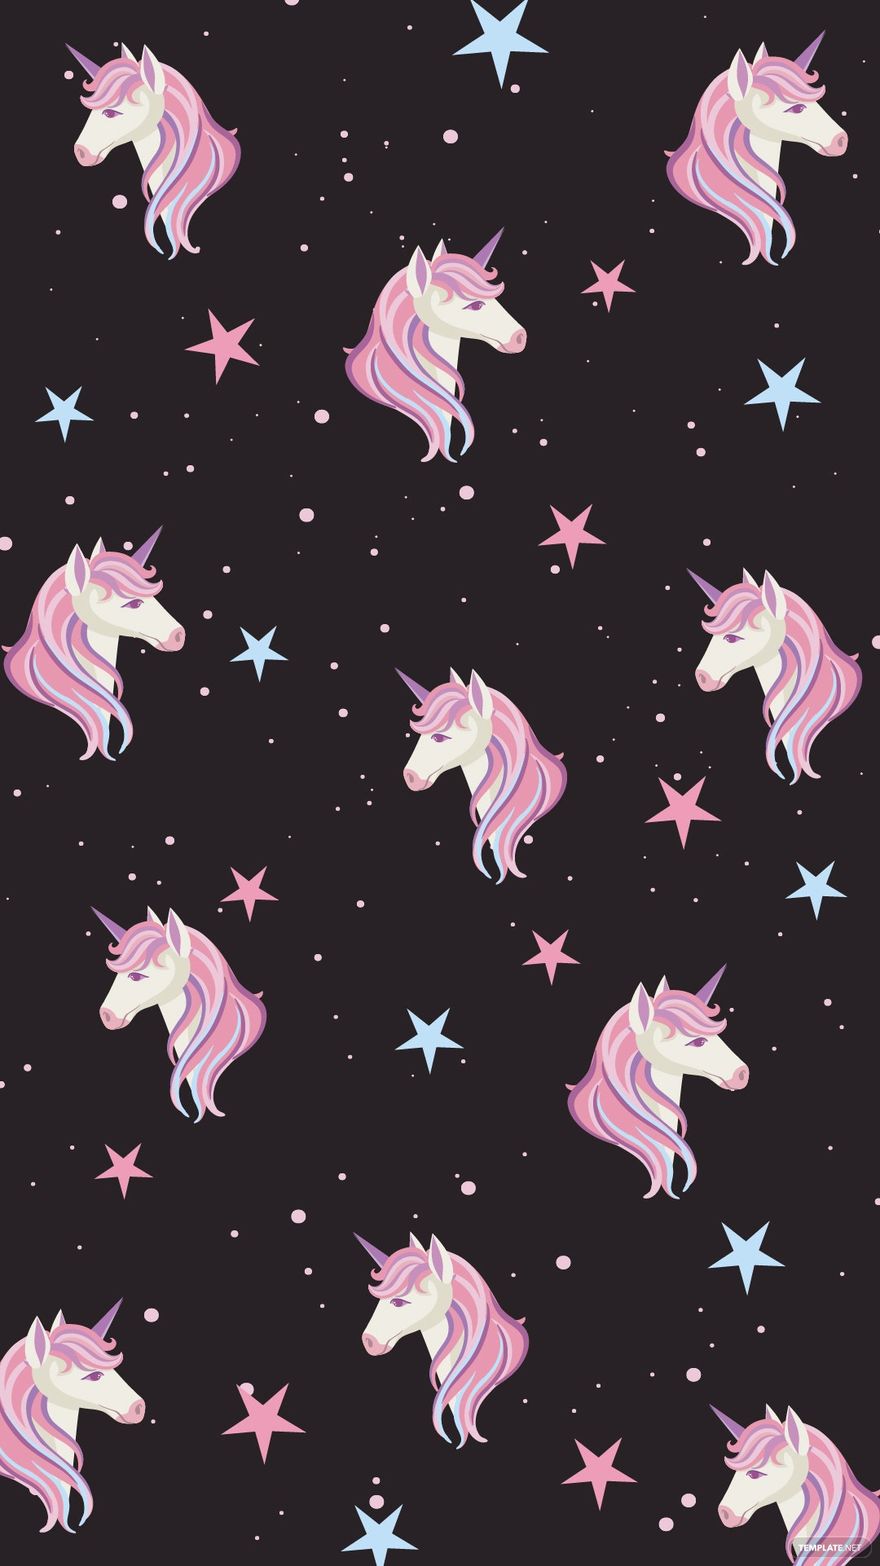 Free iPhone Unicorn Background